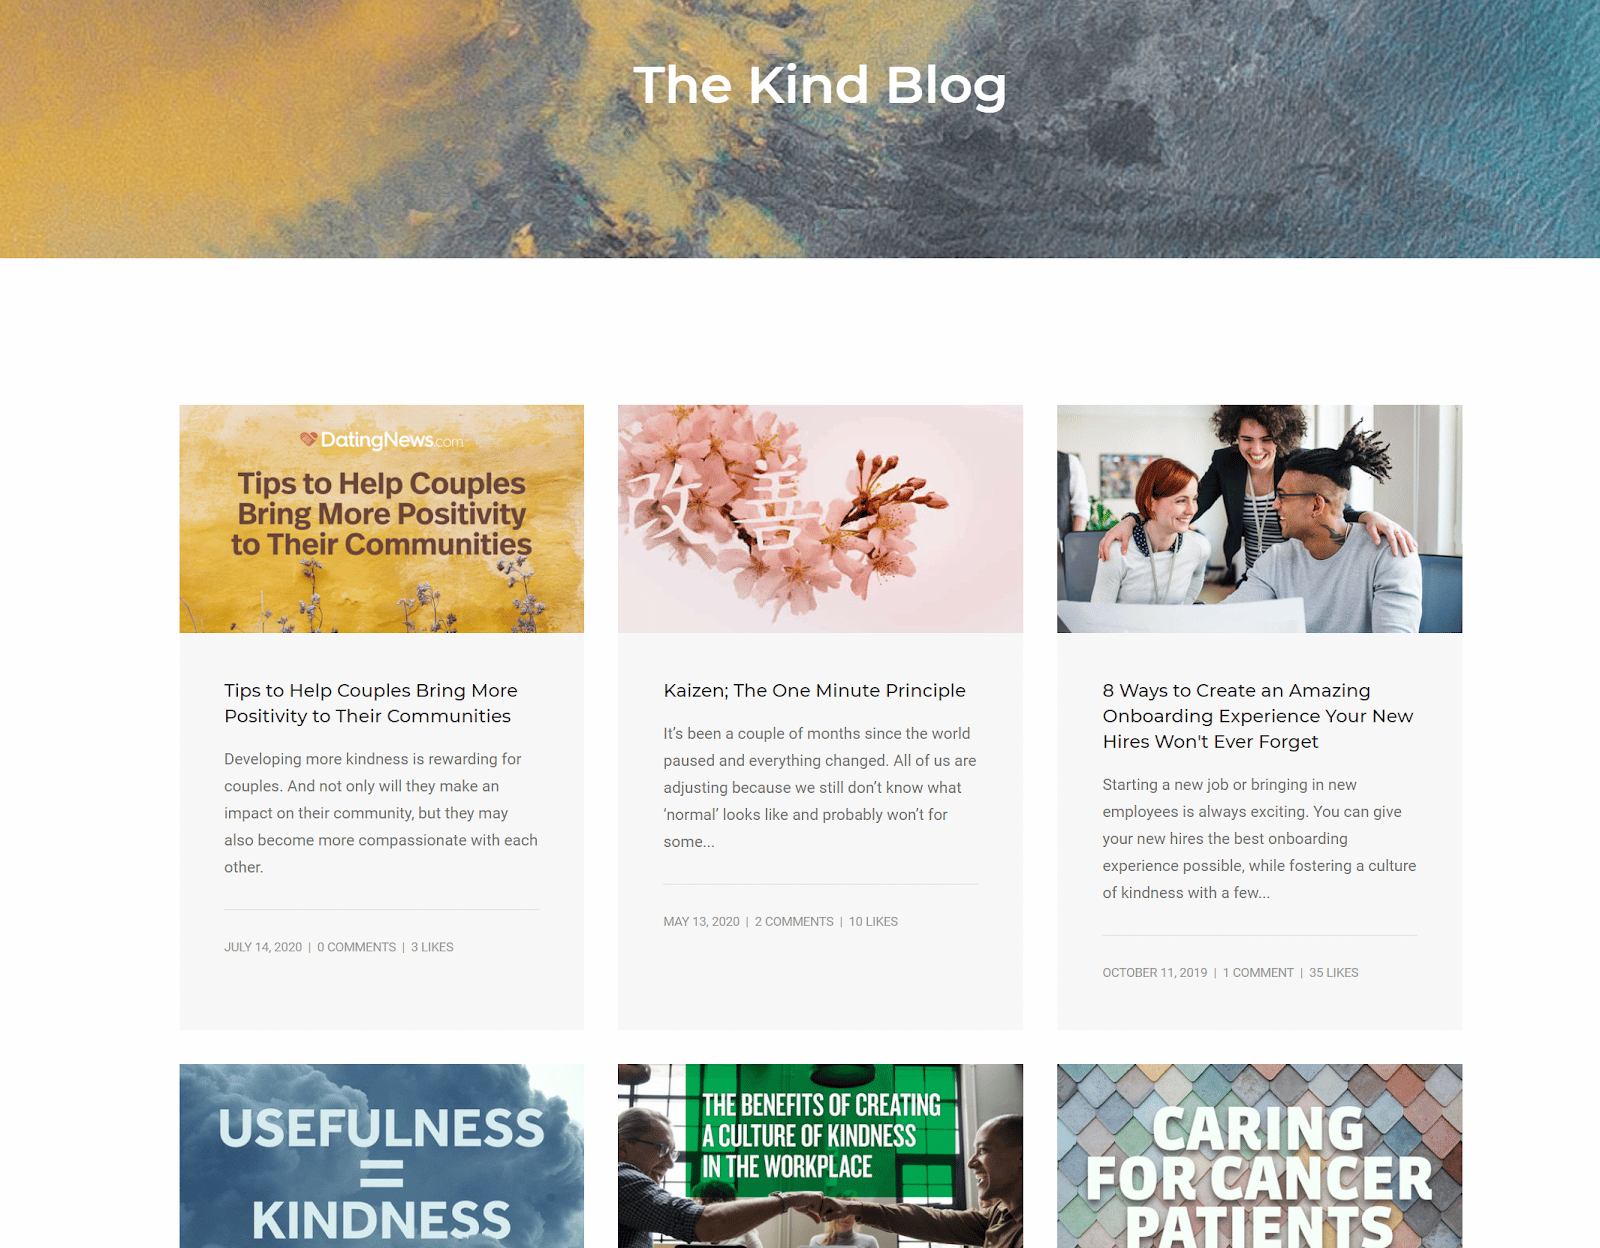 Screenshot of The Kind Blog charity blog homepage.